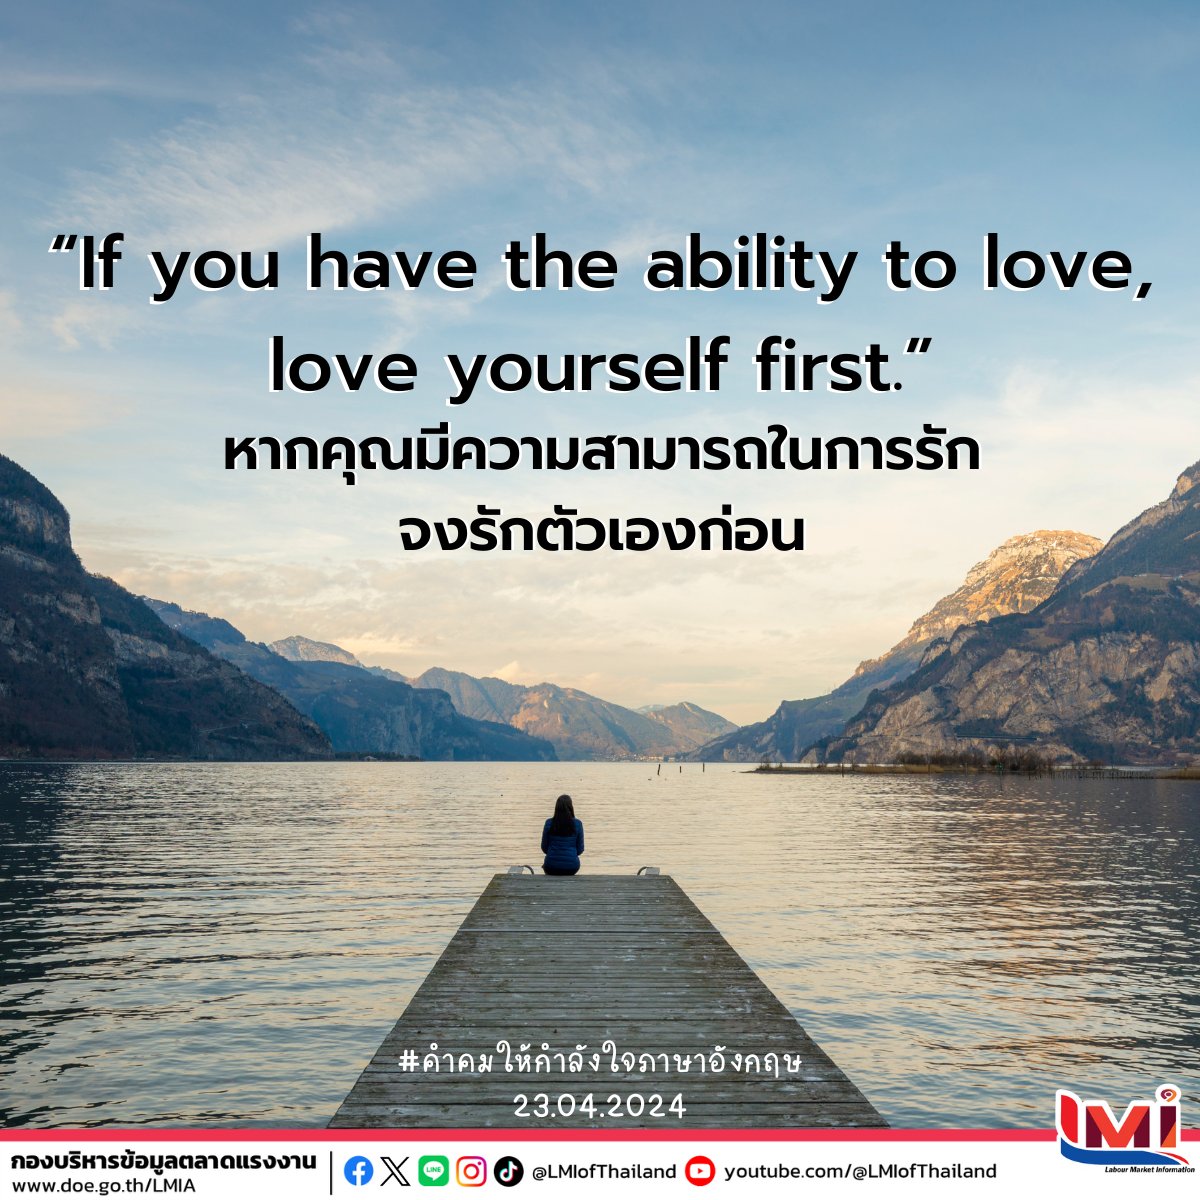 📋 คำคมให้กำลังใจภาษาอังกฤษ (Encouraging Quotes) ประจำวันนี้  ☀ If you have the ability to love, love yourself first. หากคุณมีความสามารถในการรัก. จงรักตัวเองก่อน #คำศัพท์แรงงานวันละคำ #คำศัพท์แรงงานวันนี้  #คำคมภาษาอังกฤษ #แคปชั่นภาษาอังกฤษ  #ไทยมีงานทำ #LMIofThailand